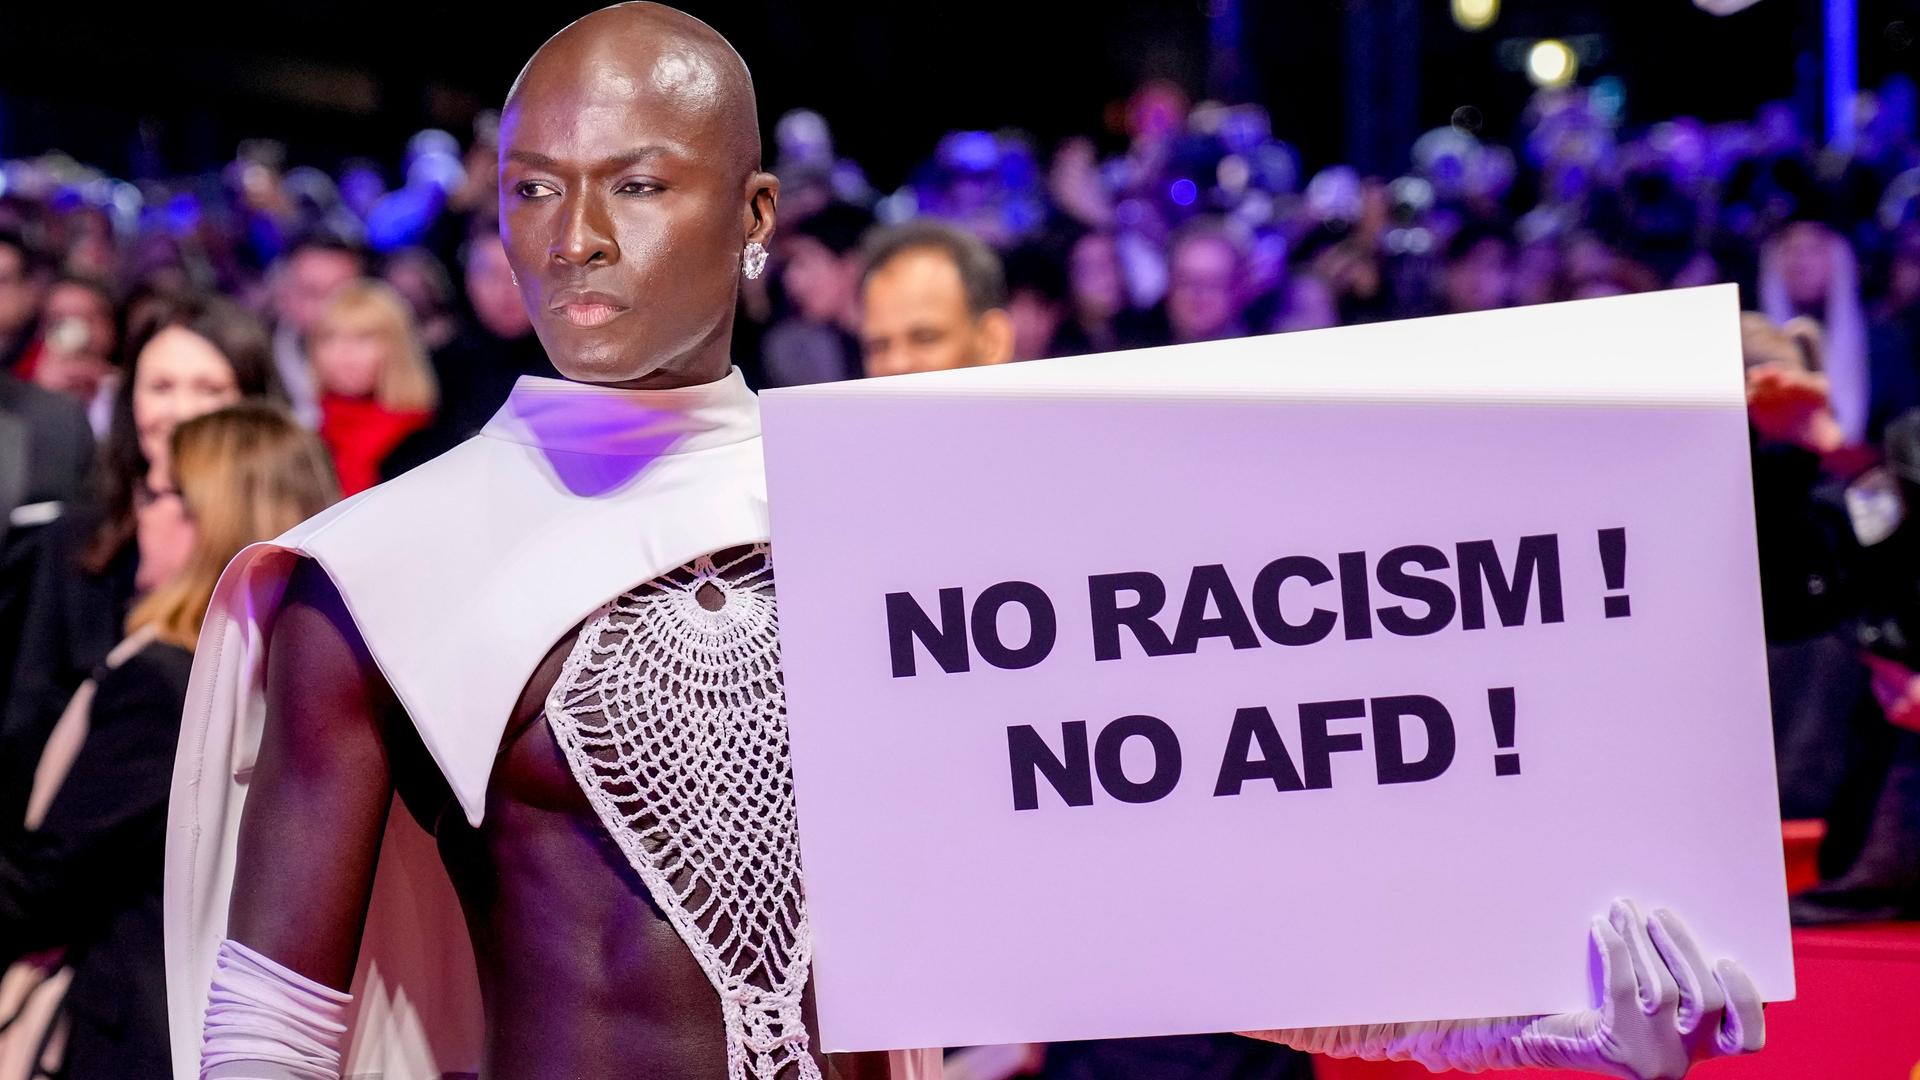 Protest gegen die AfD auf dem Roten Teppich bei der Eröffnung der Berlinale. Ein Mann hält ein Schild auf dem steht "NO RACISM! NO AFD!"